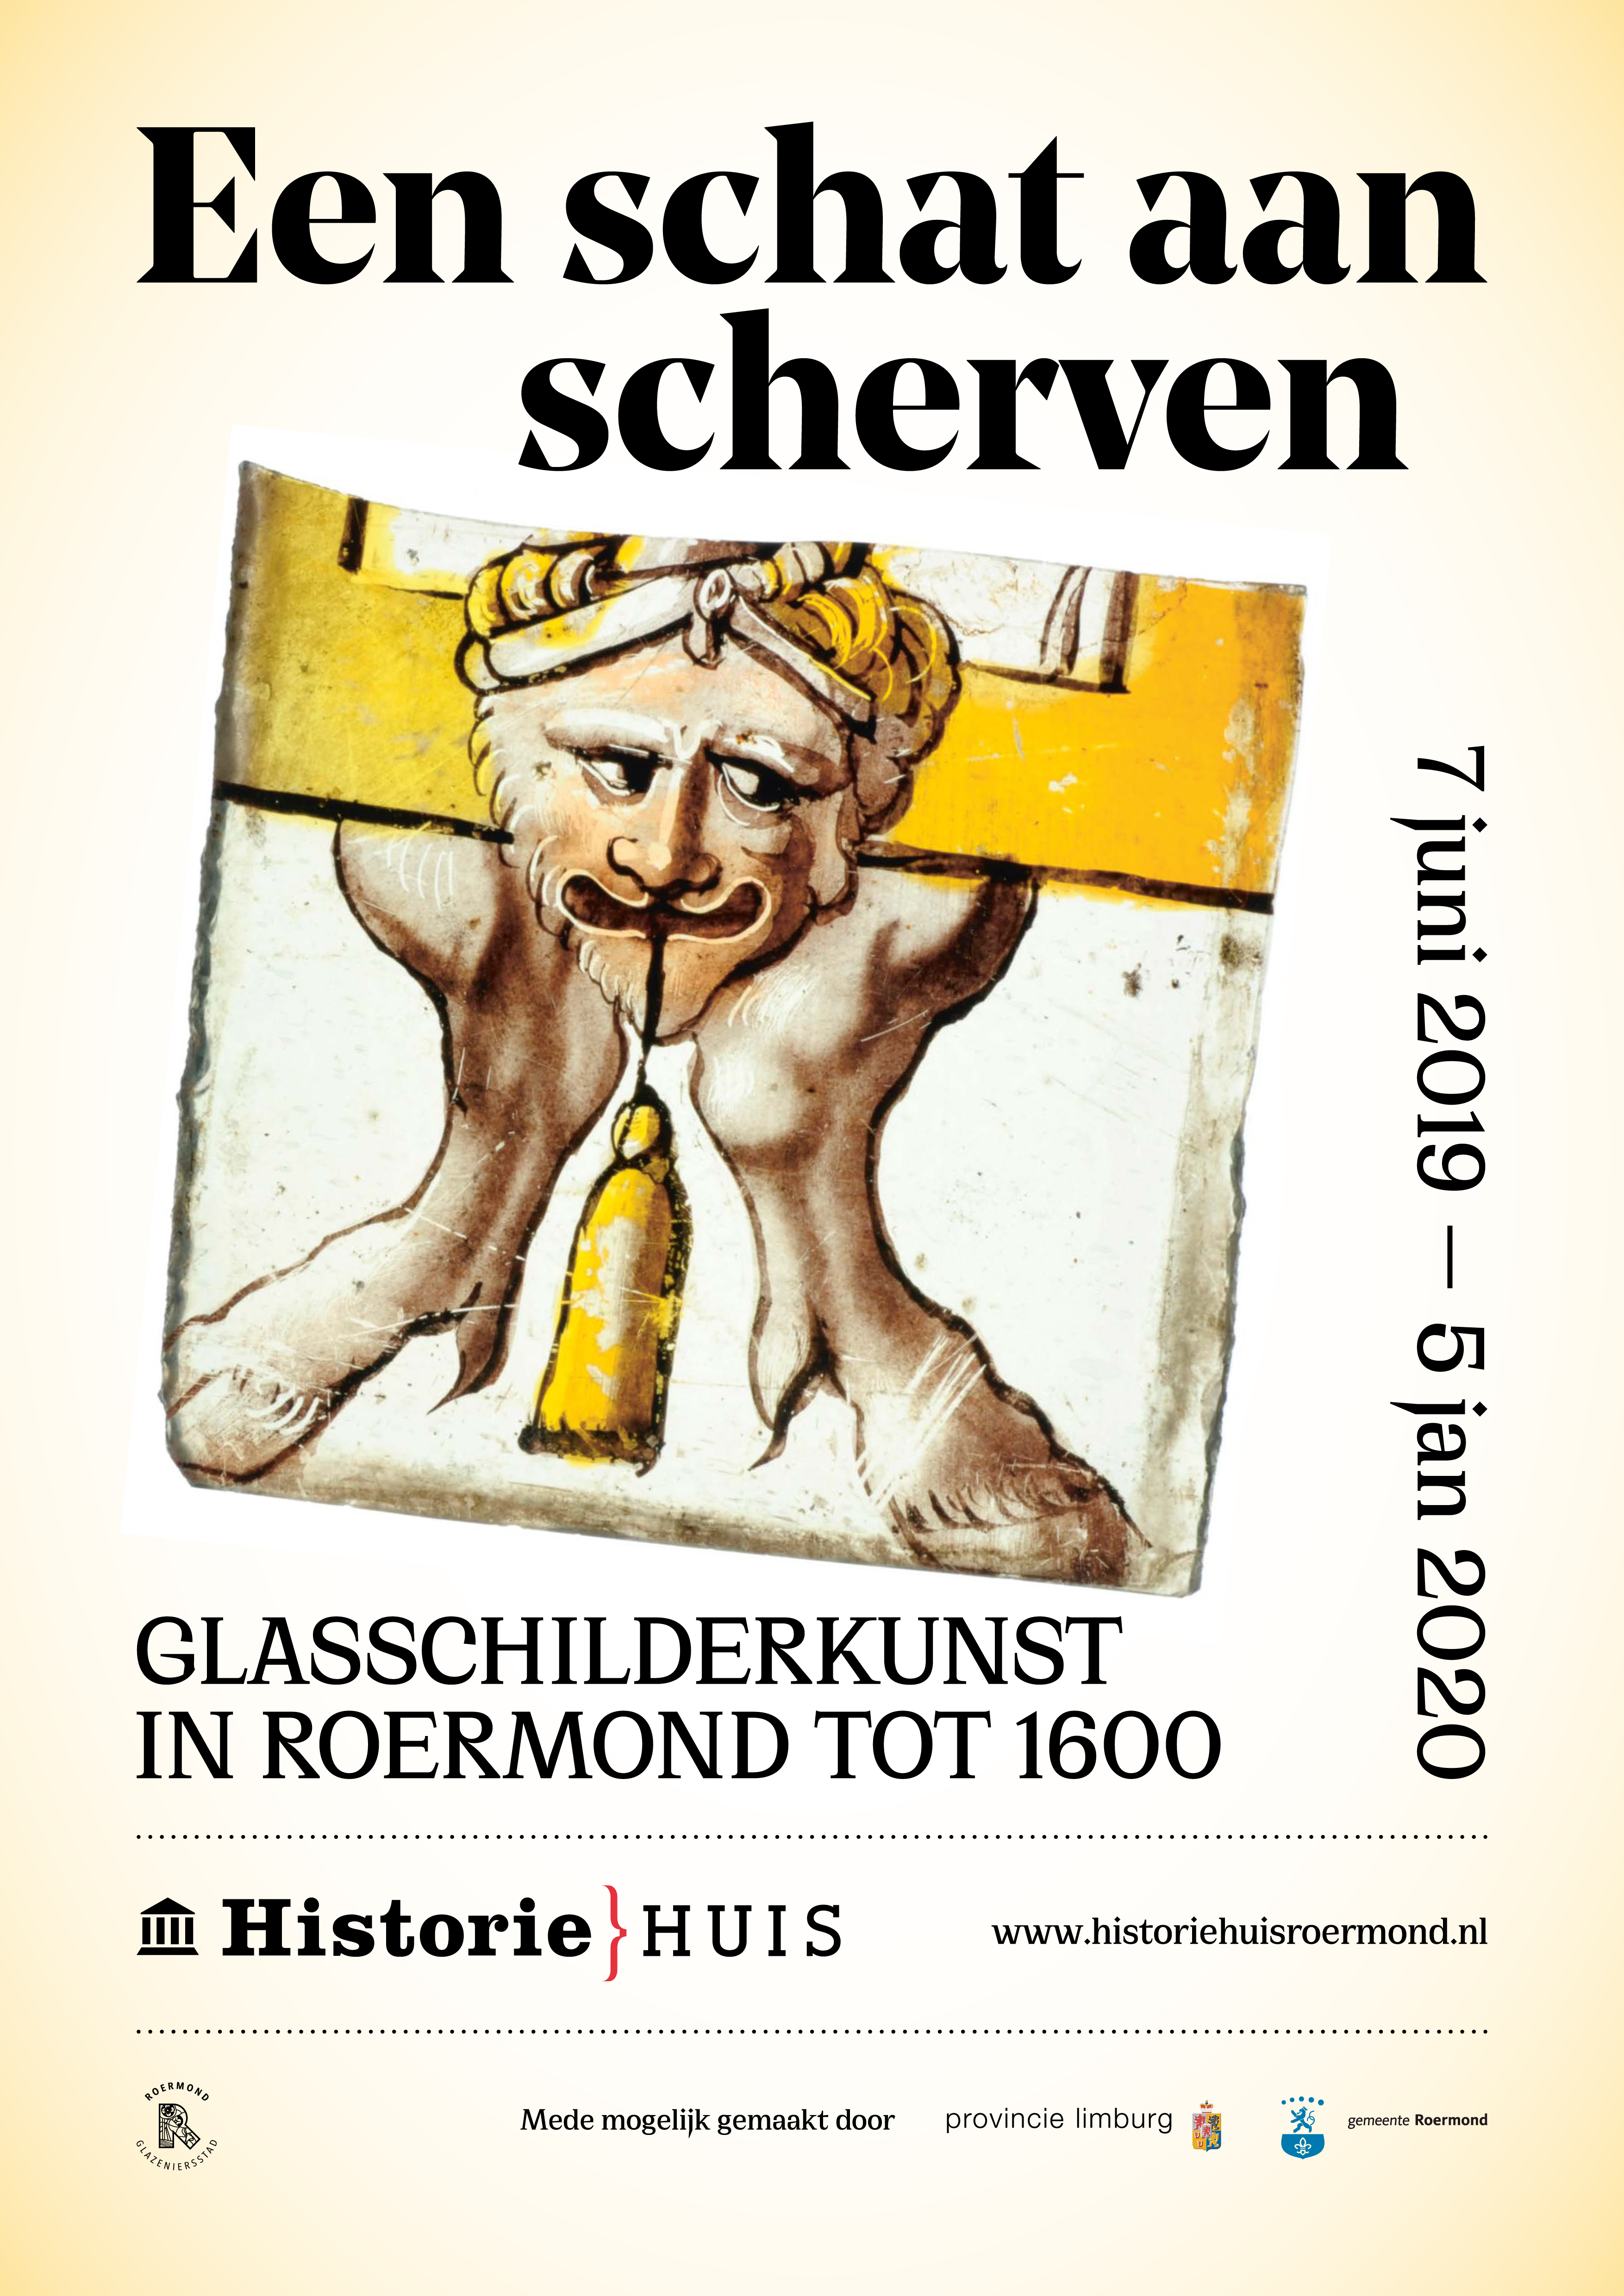 Poster 'Een schat aan scherven' (Historiehuis).jpg